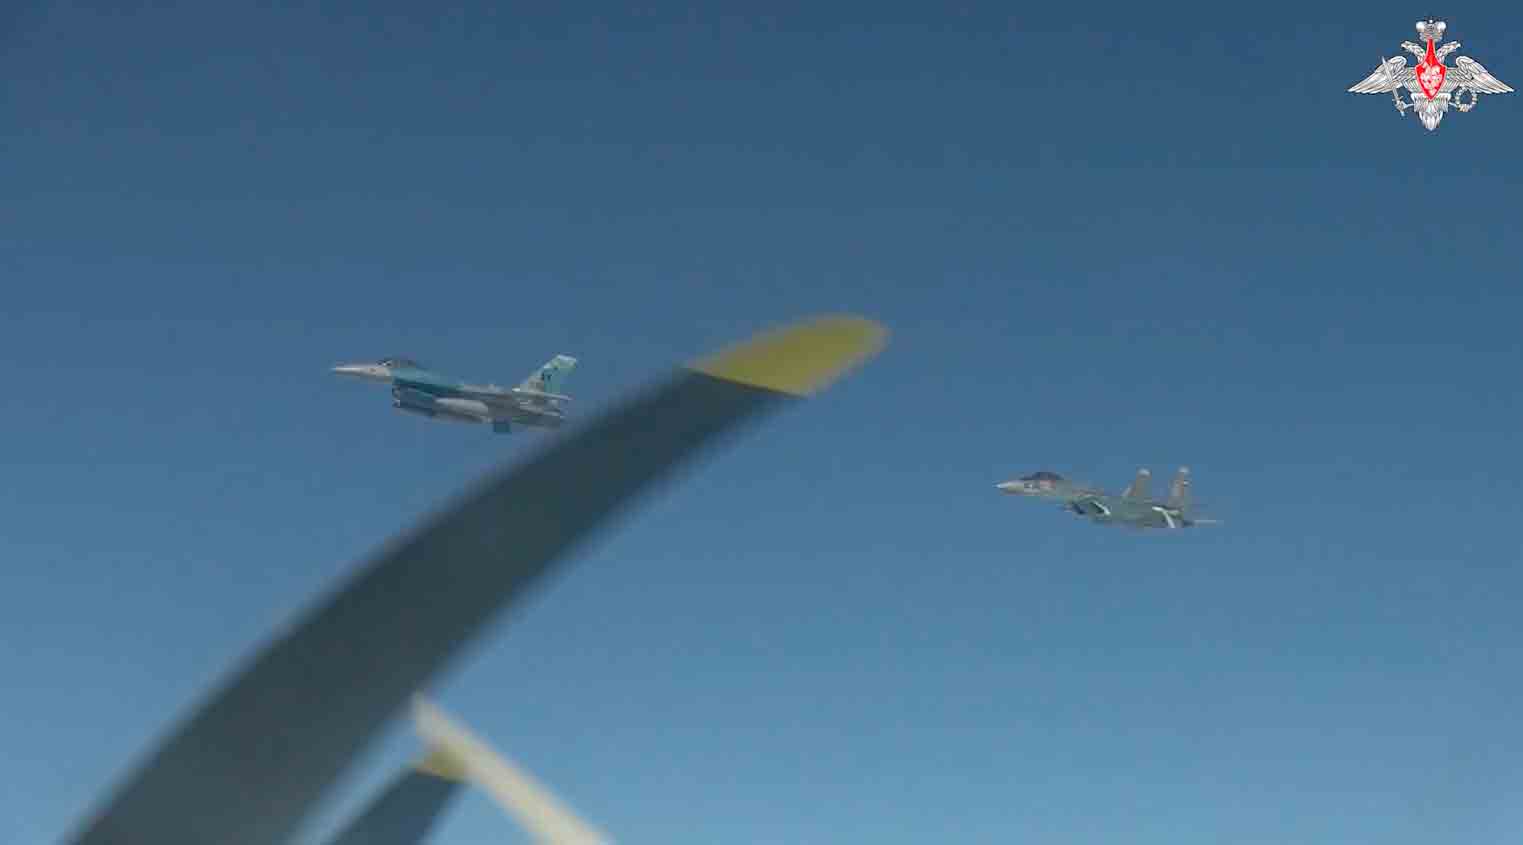 vídeo: caças f-16 perseguem bombardeiros russos e são perseguidos por caças russos su-35 no alasca